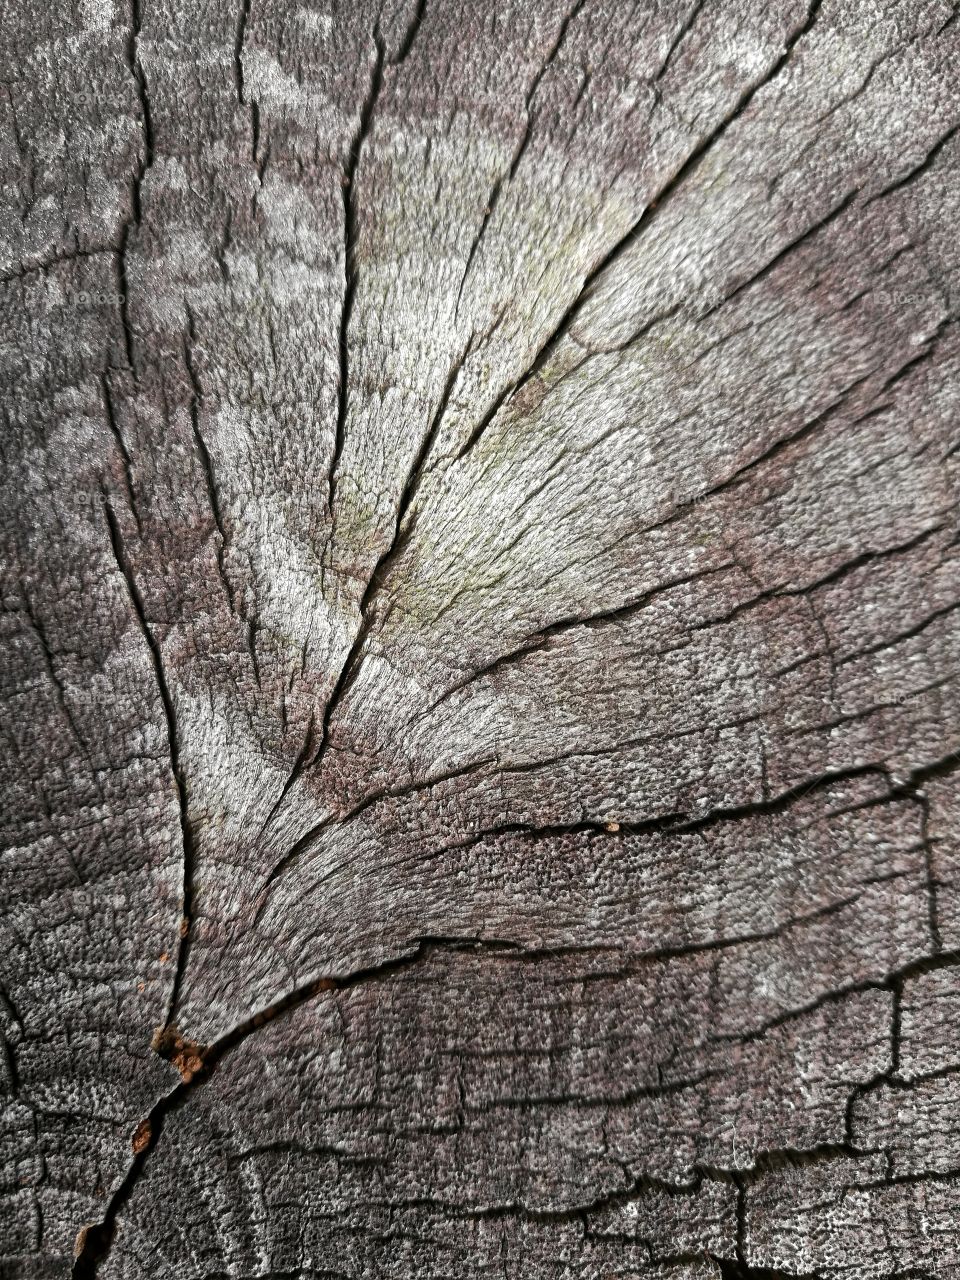 cracks of wood